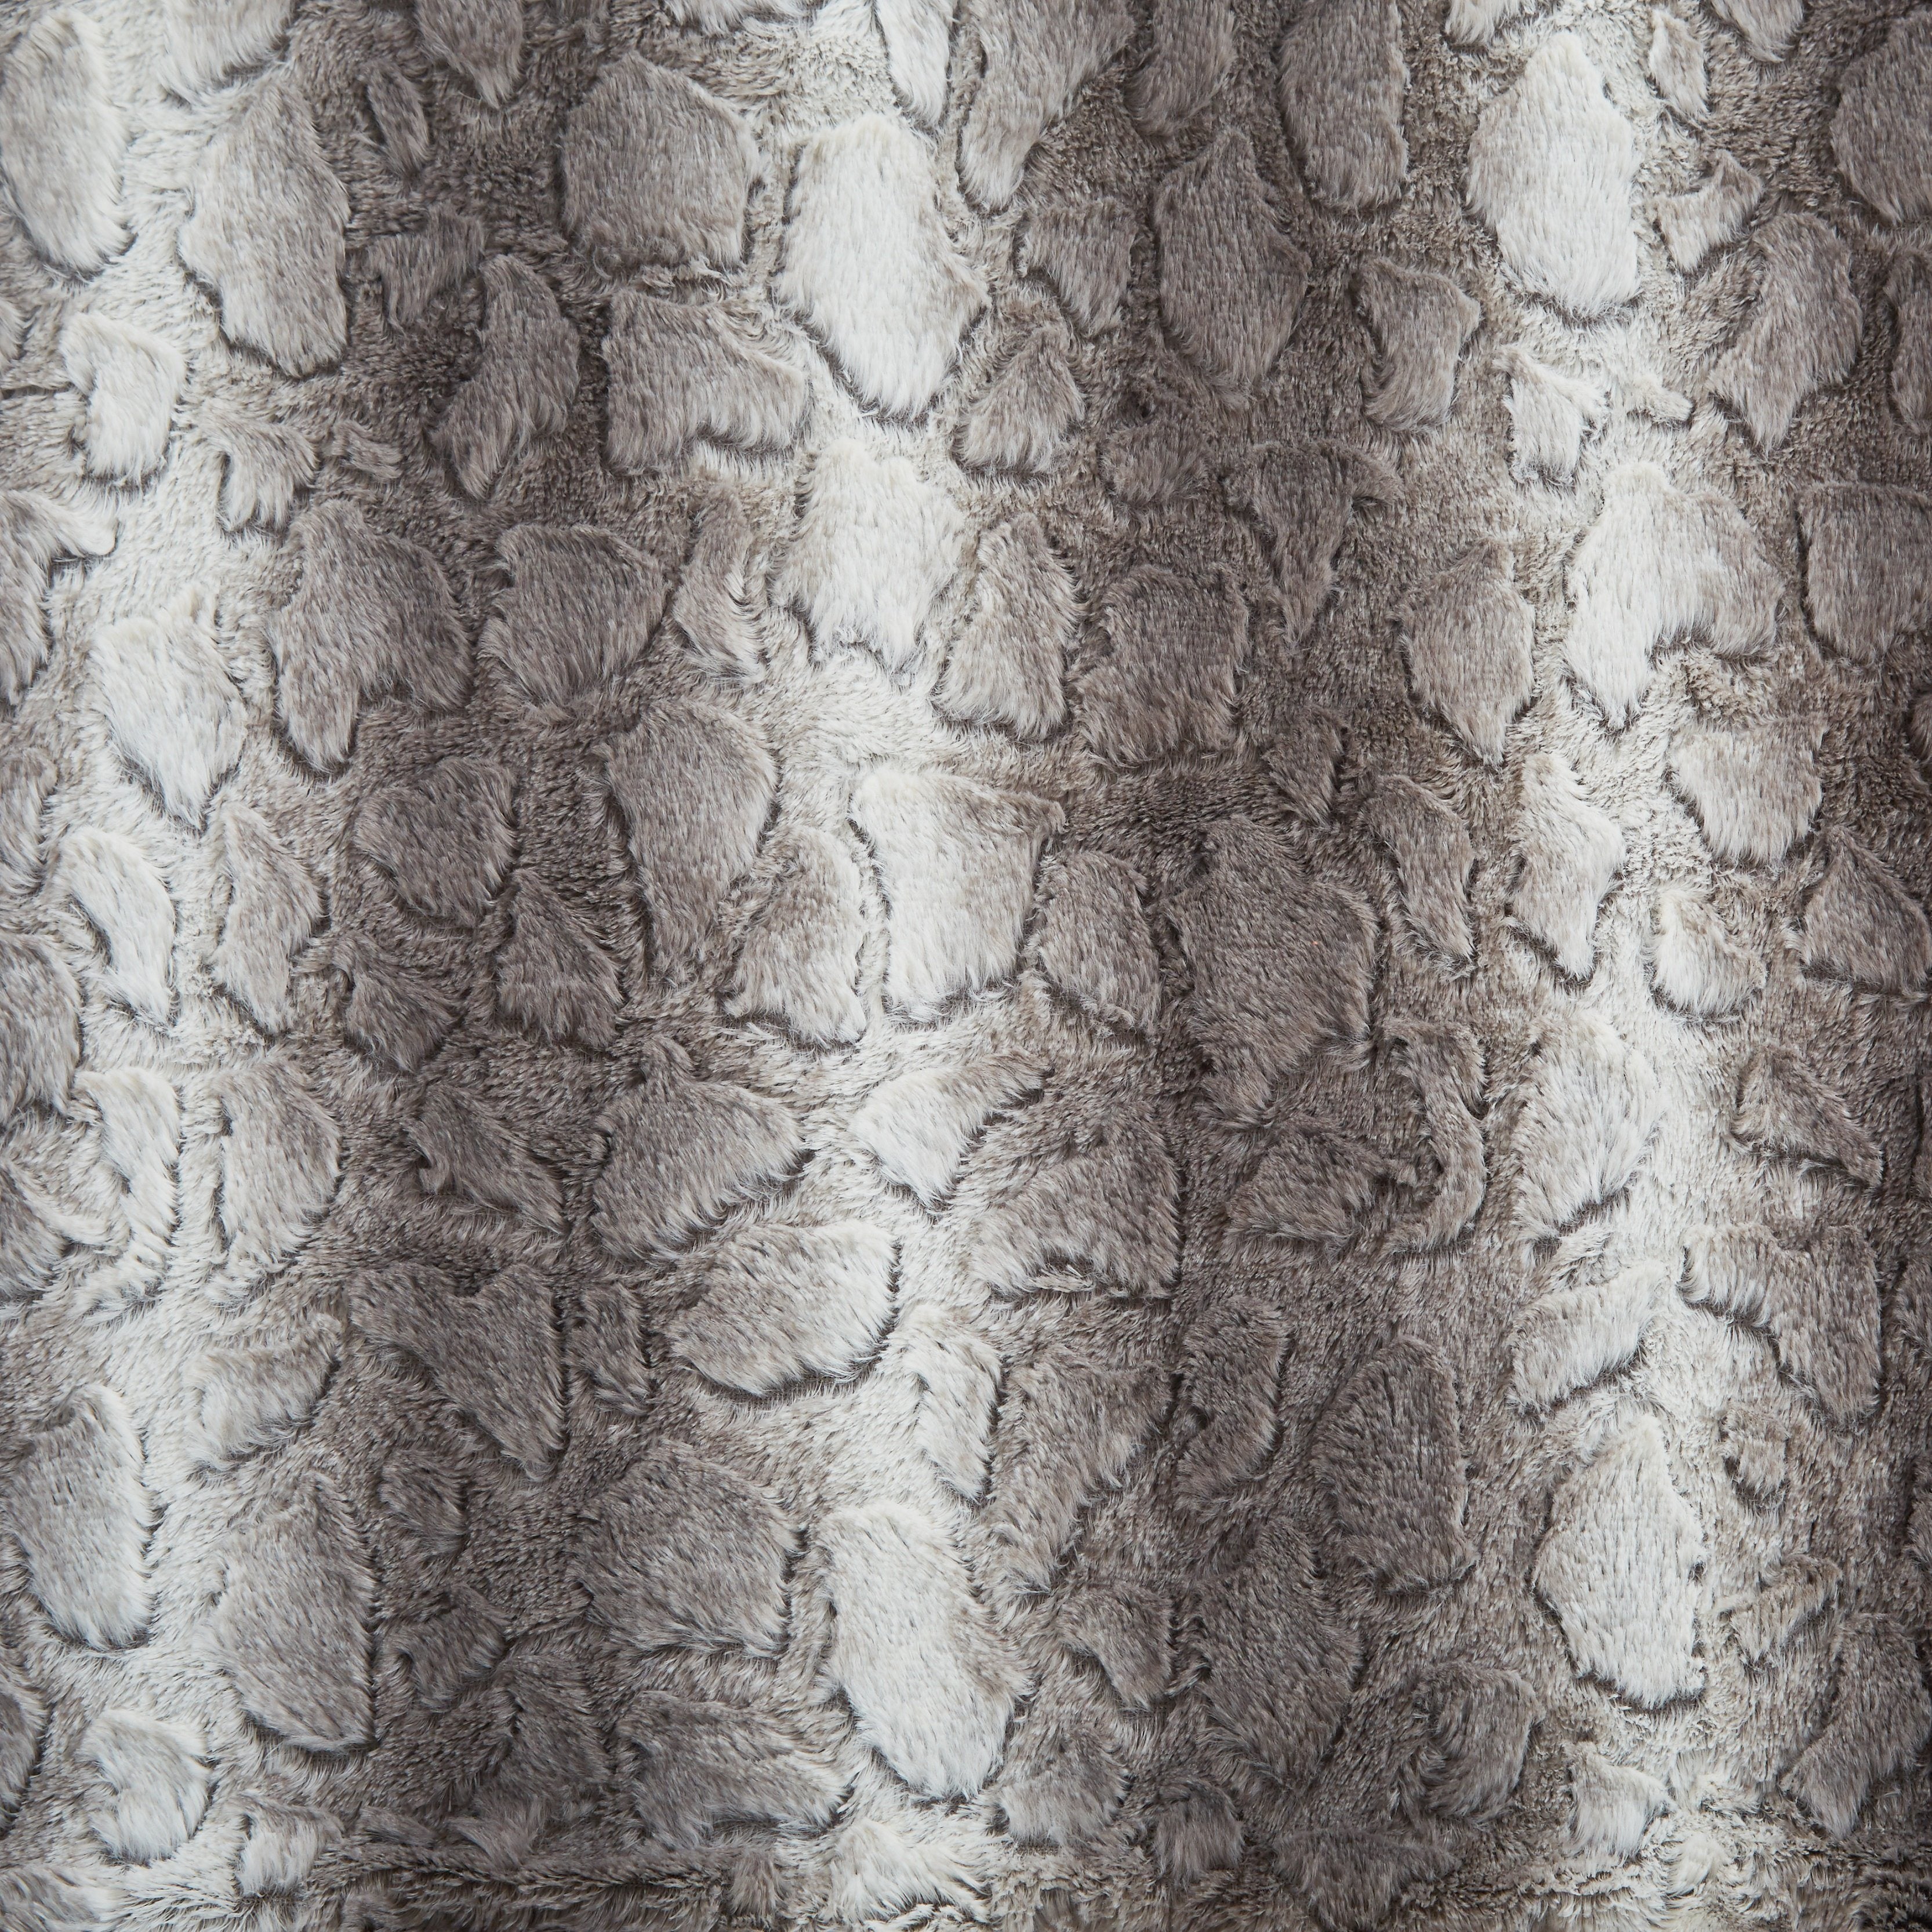 Tache Silver Snow Giraffe Faux Fur Throw Blanket (DY16) - Tache Home Fashion